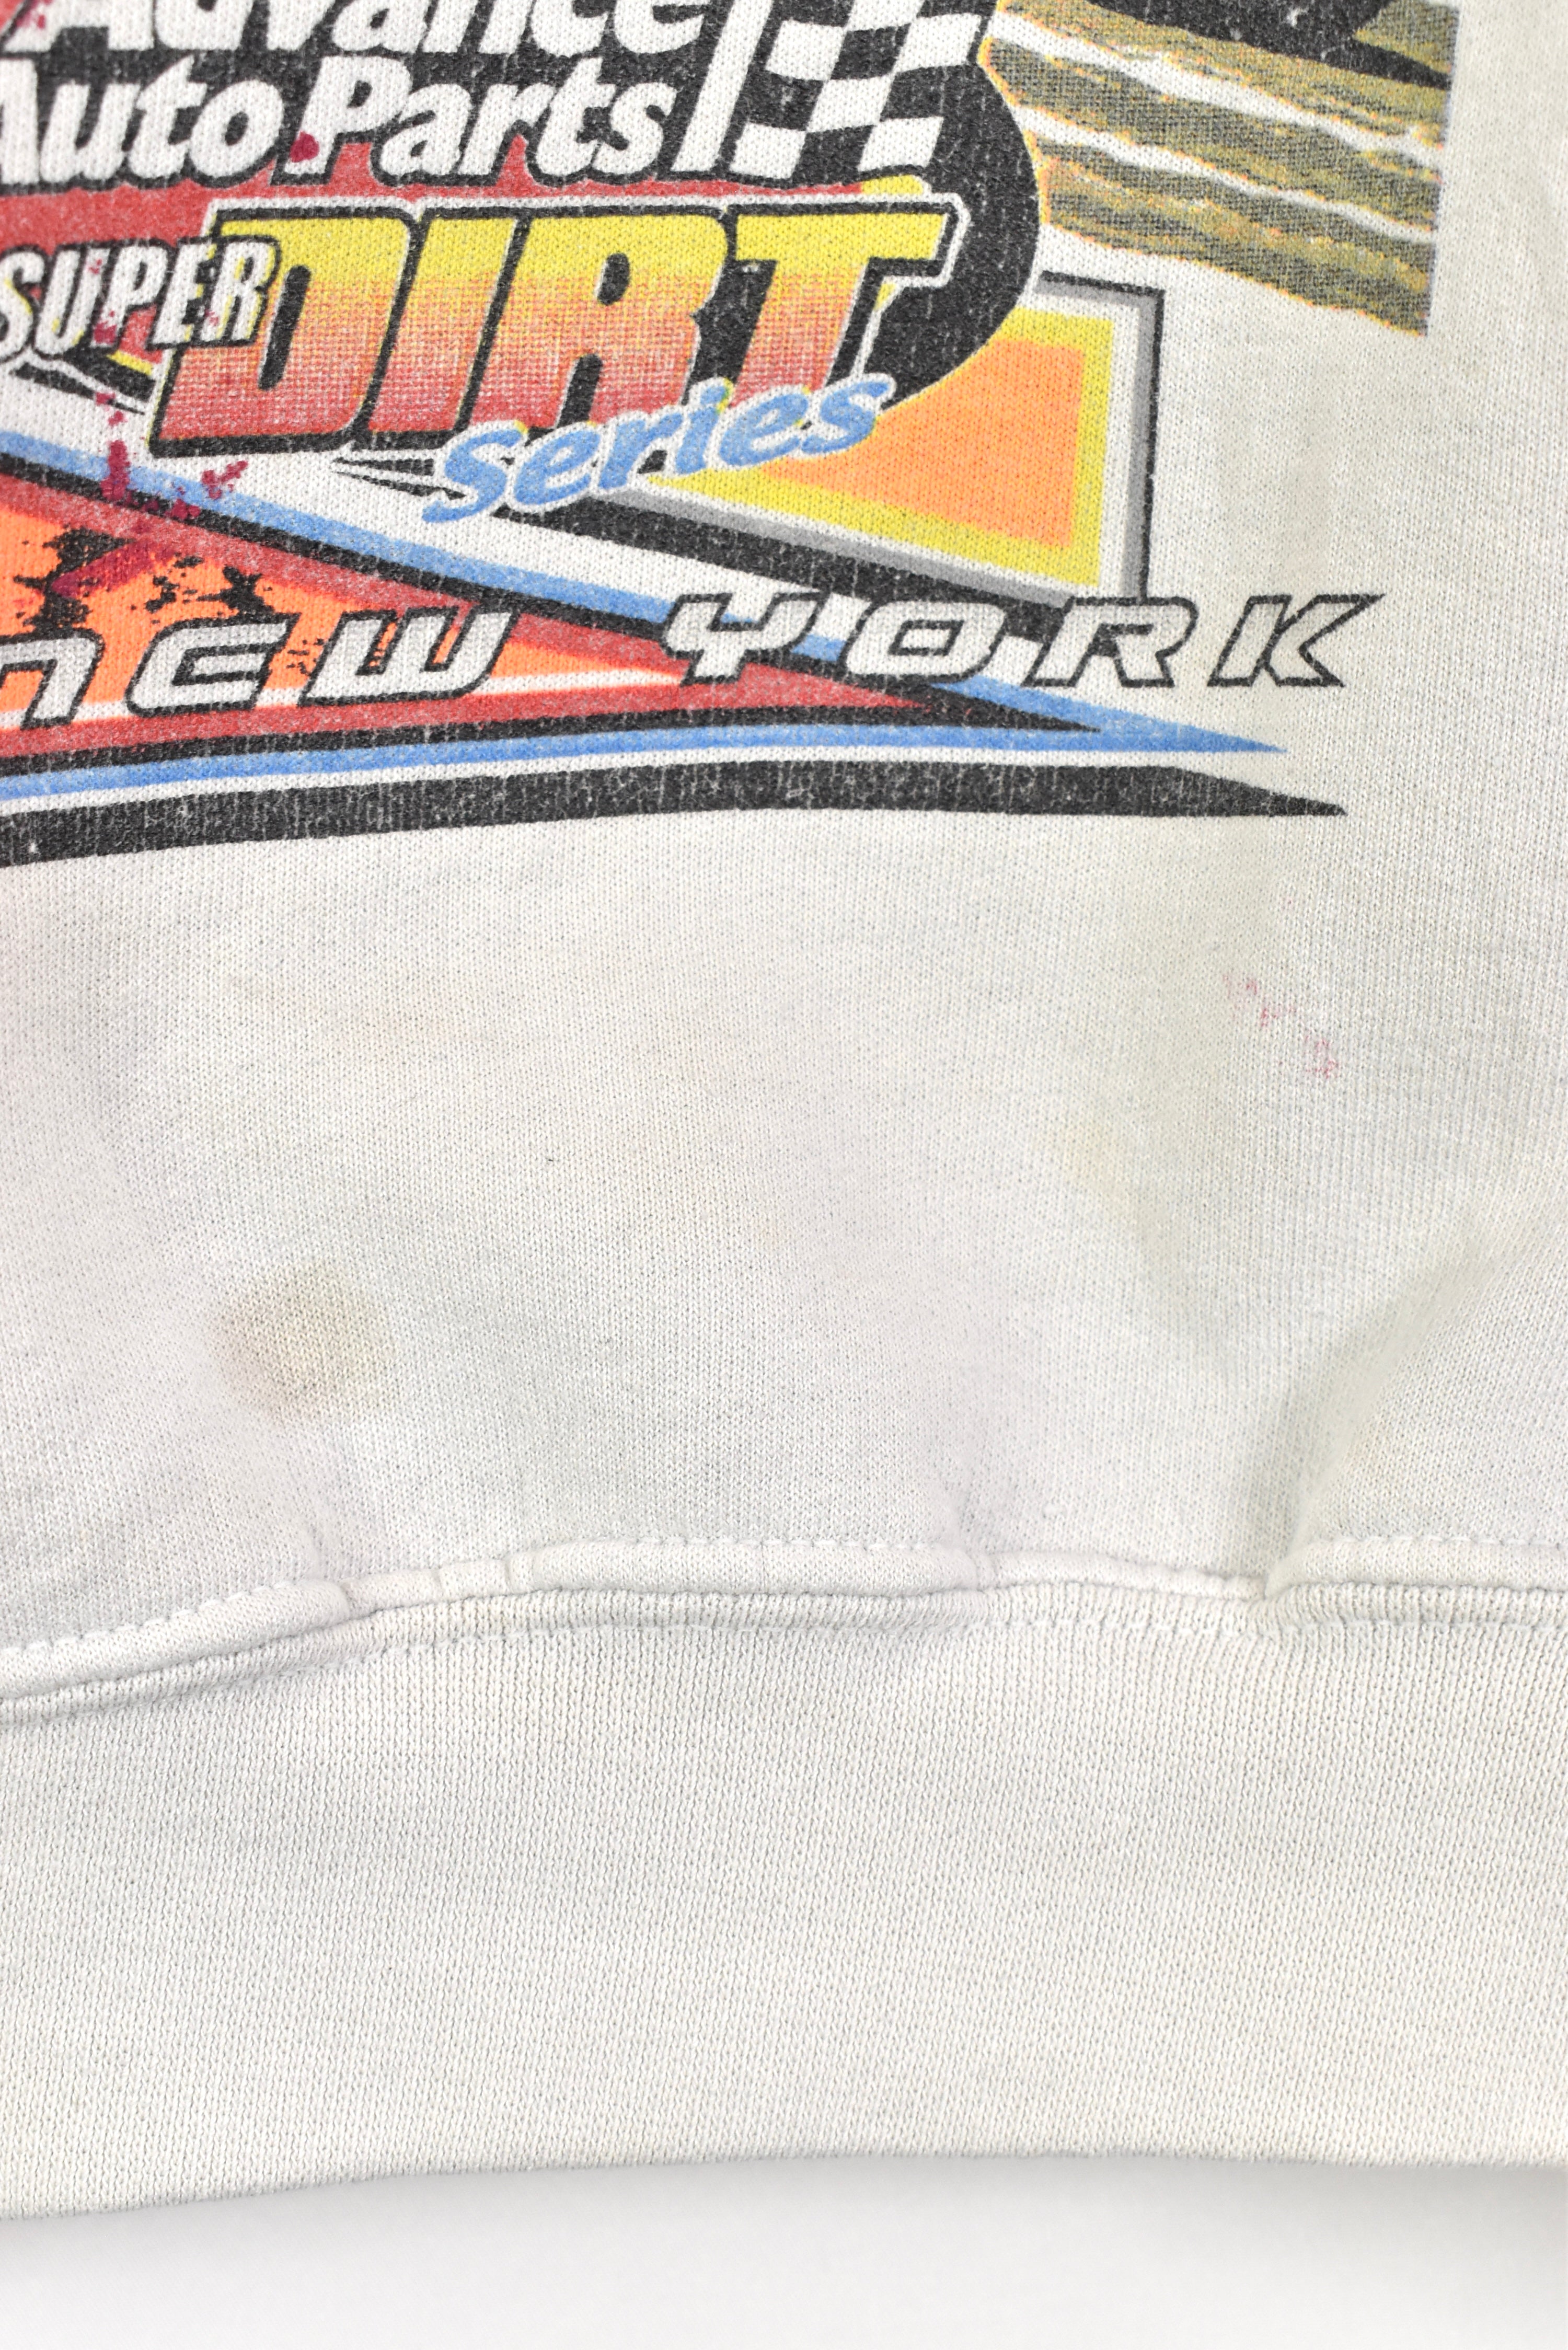 Vintage Super Dirt Series racing grey sweatshirt | Large NASCAR / RACING